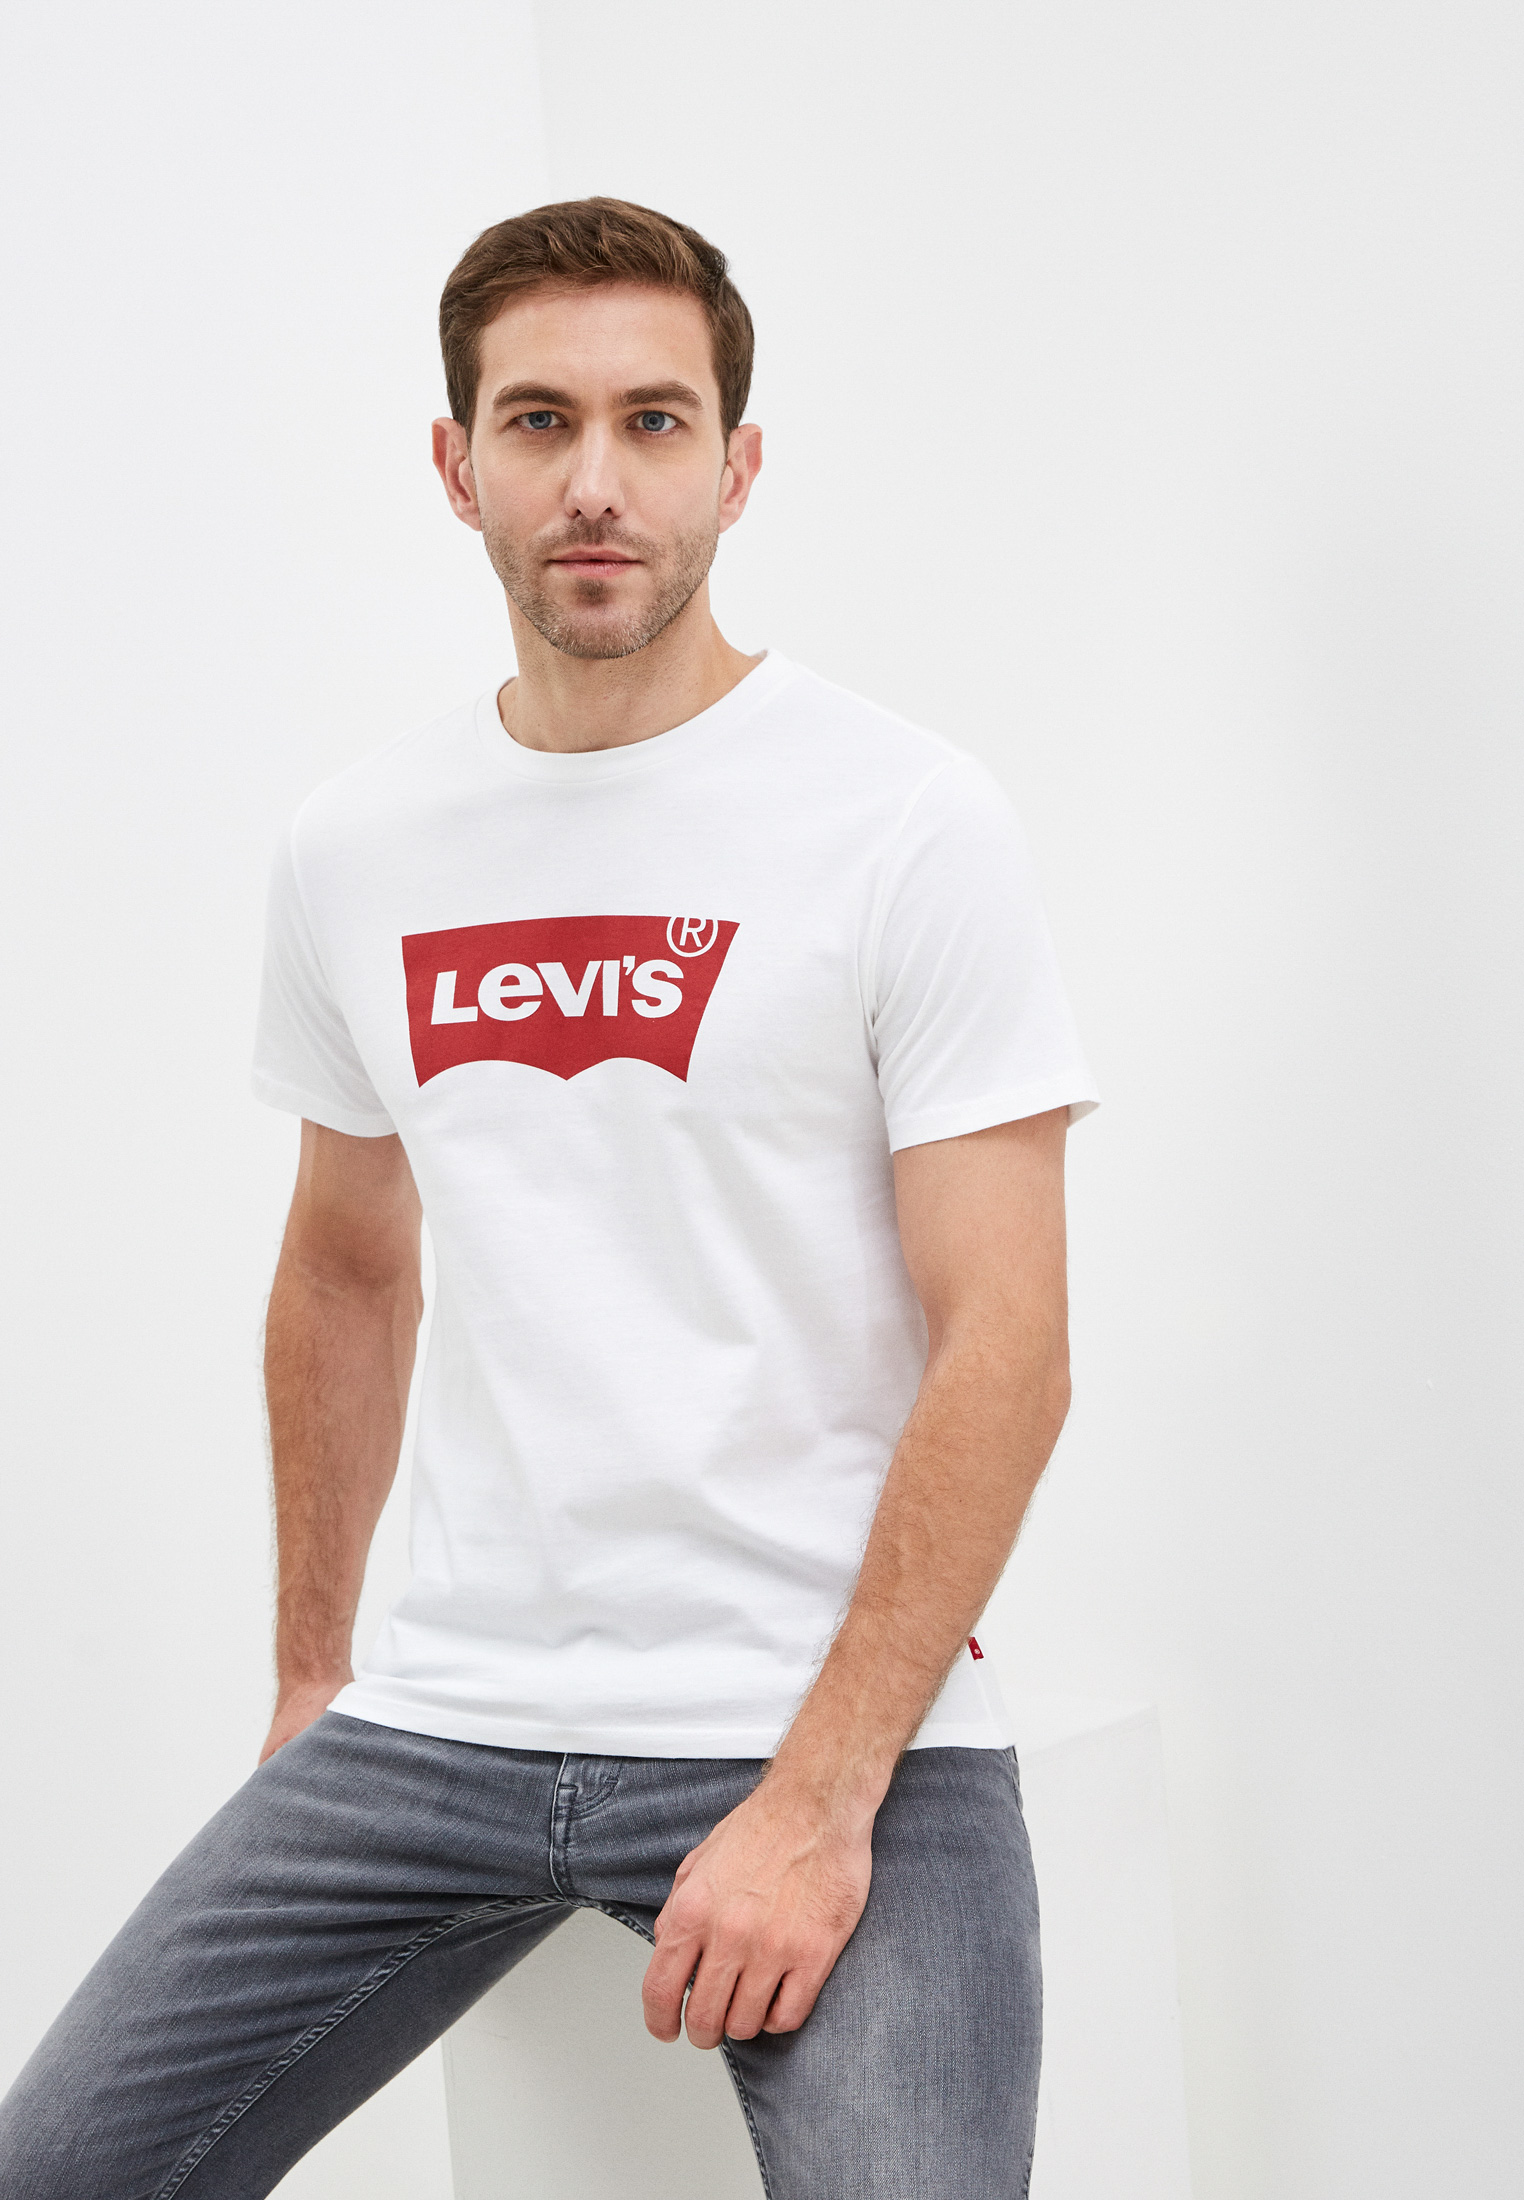 Купить футболку levis. Levis 1778301400. Майка Левис белая. Белая футболка Levi's мужская. Футболка левайс мужская белая.